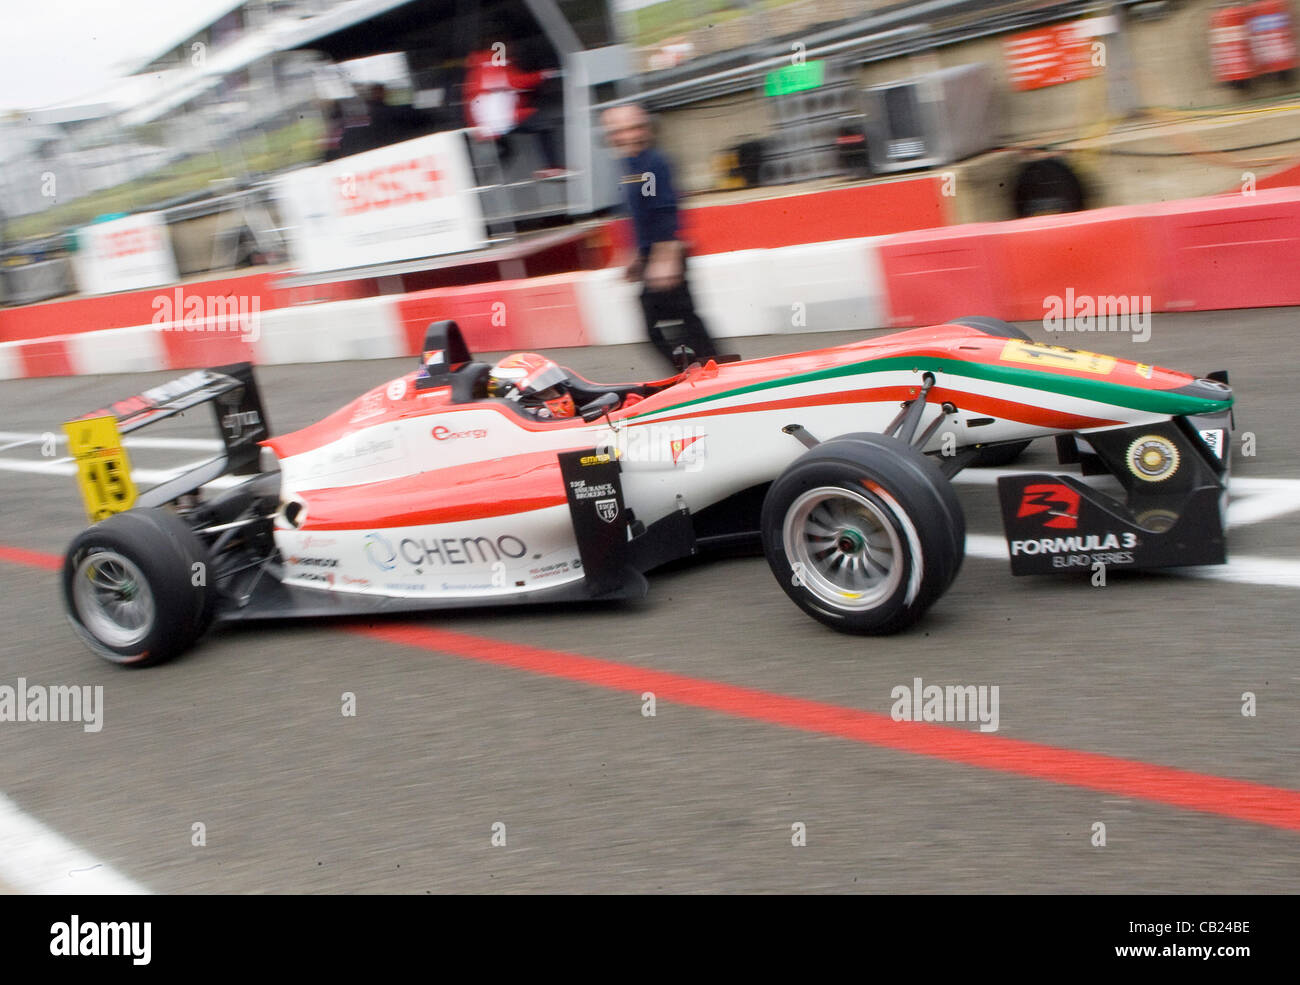 18.05.2012 Brands Hatch, Inghilterra. Formula 3 Euro Series, Rafaelle Marcietto (I) esce dalla pit lane durante il venerdi di FP1. Foto Stock